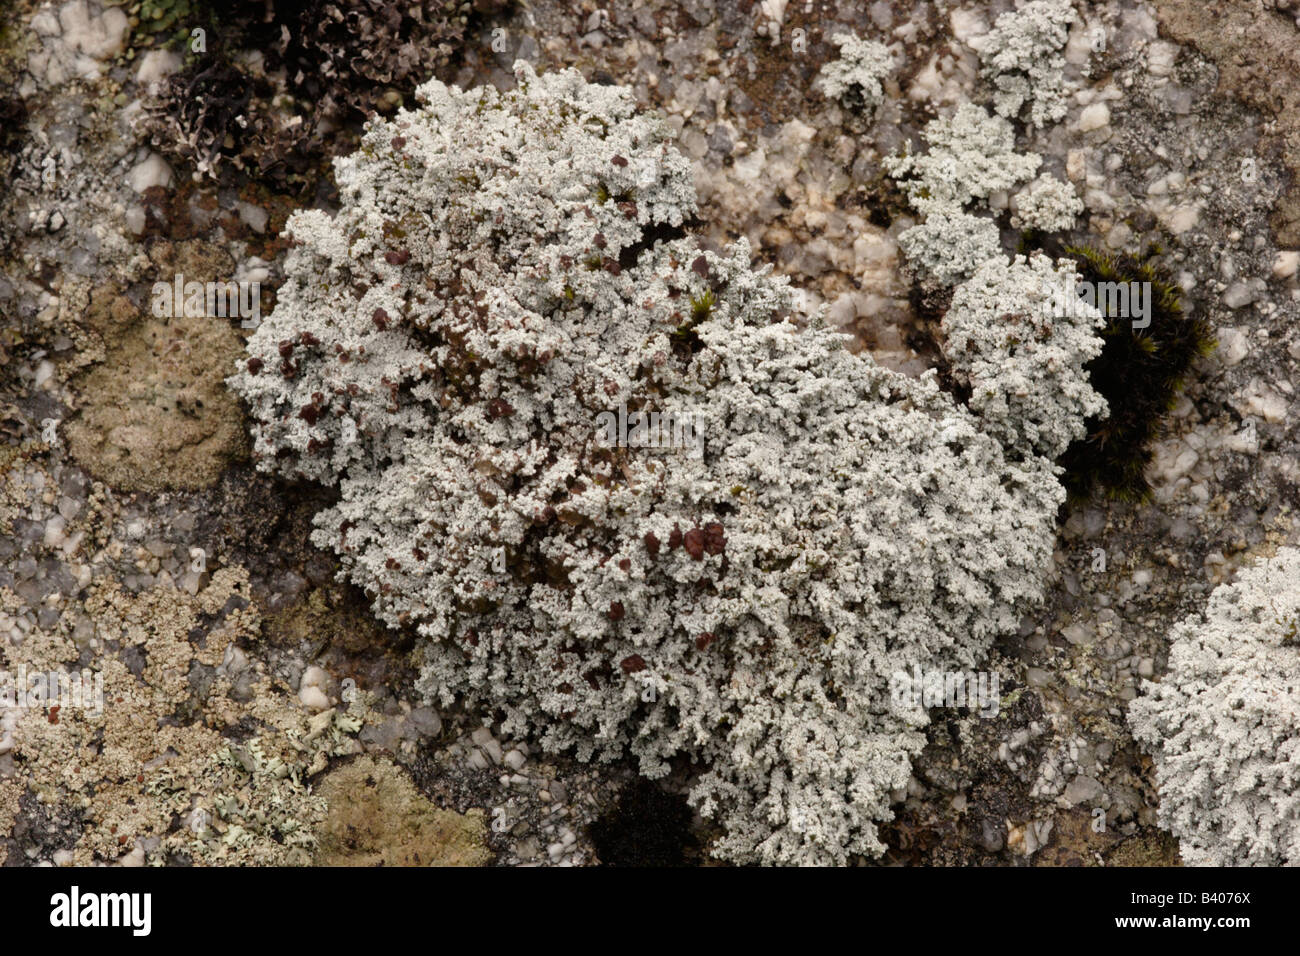 Lichen Stereocaulon vesuvianum on a granite rock UK Stock Photo